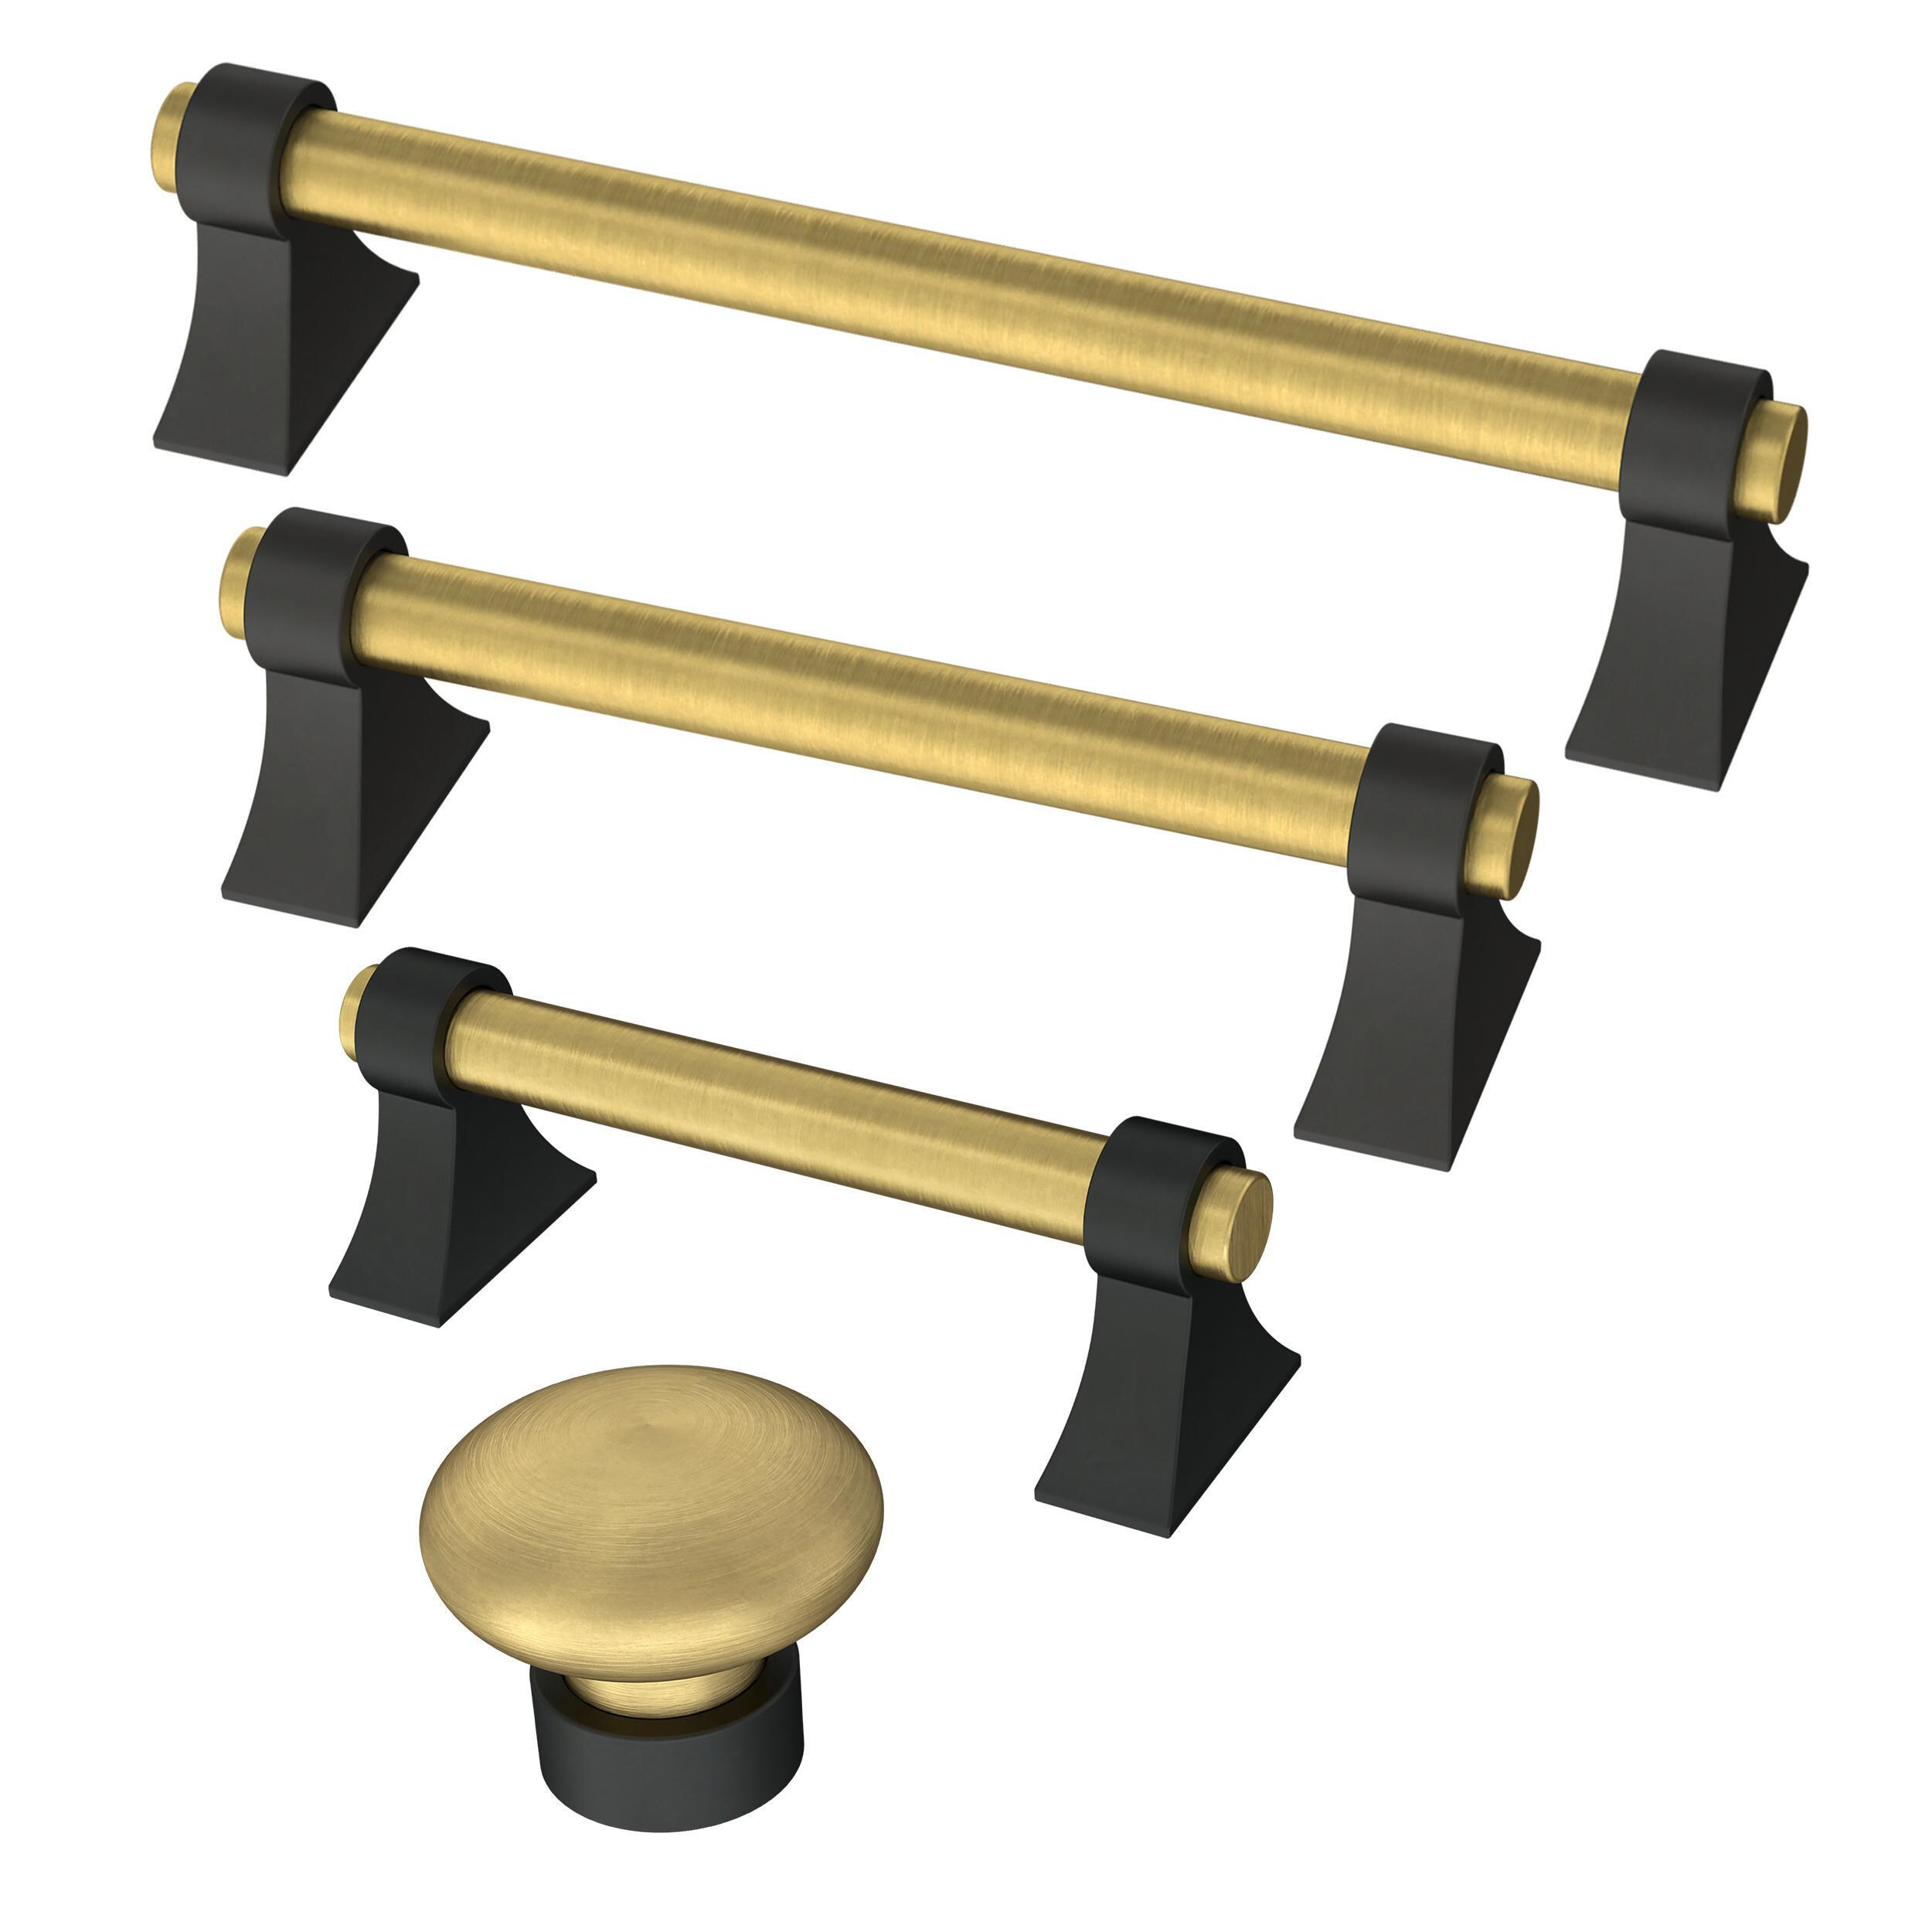 Brainerd Pedestal 1-1/8-in Brushed Brass Round Cabinet Knob at